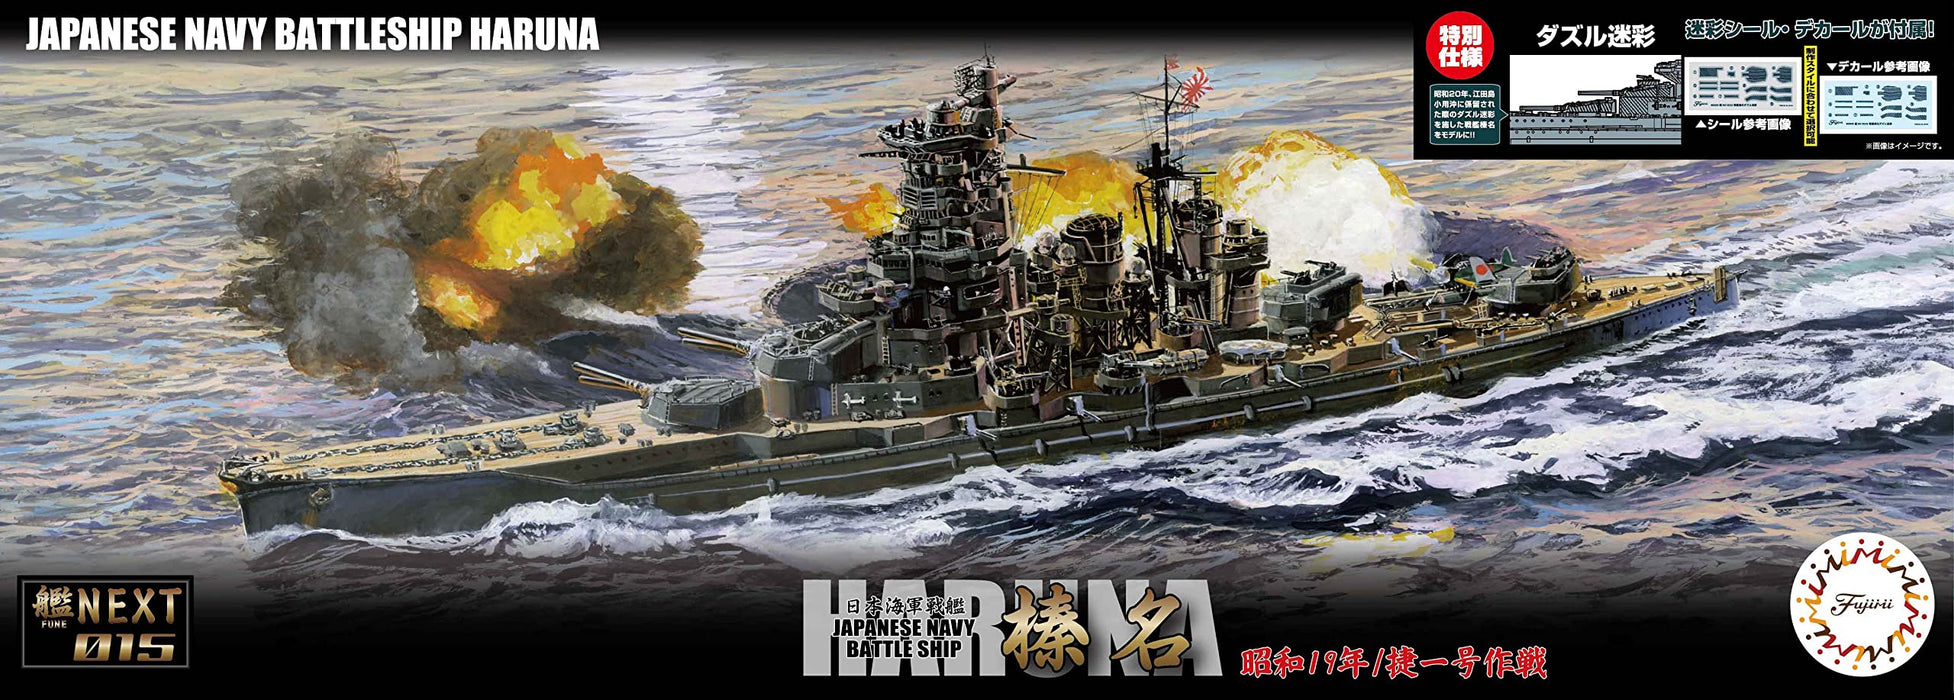 1/700 IJN Battleship Haruna 1944/Sho Ichigo Operation Special Ver. KanNX-15 EX-2_4